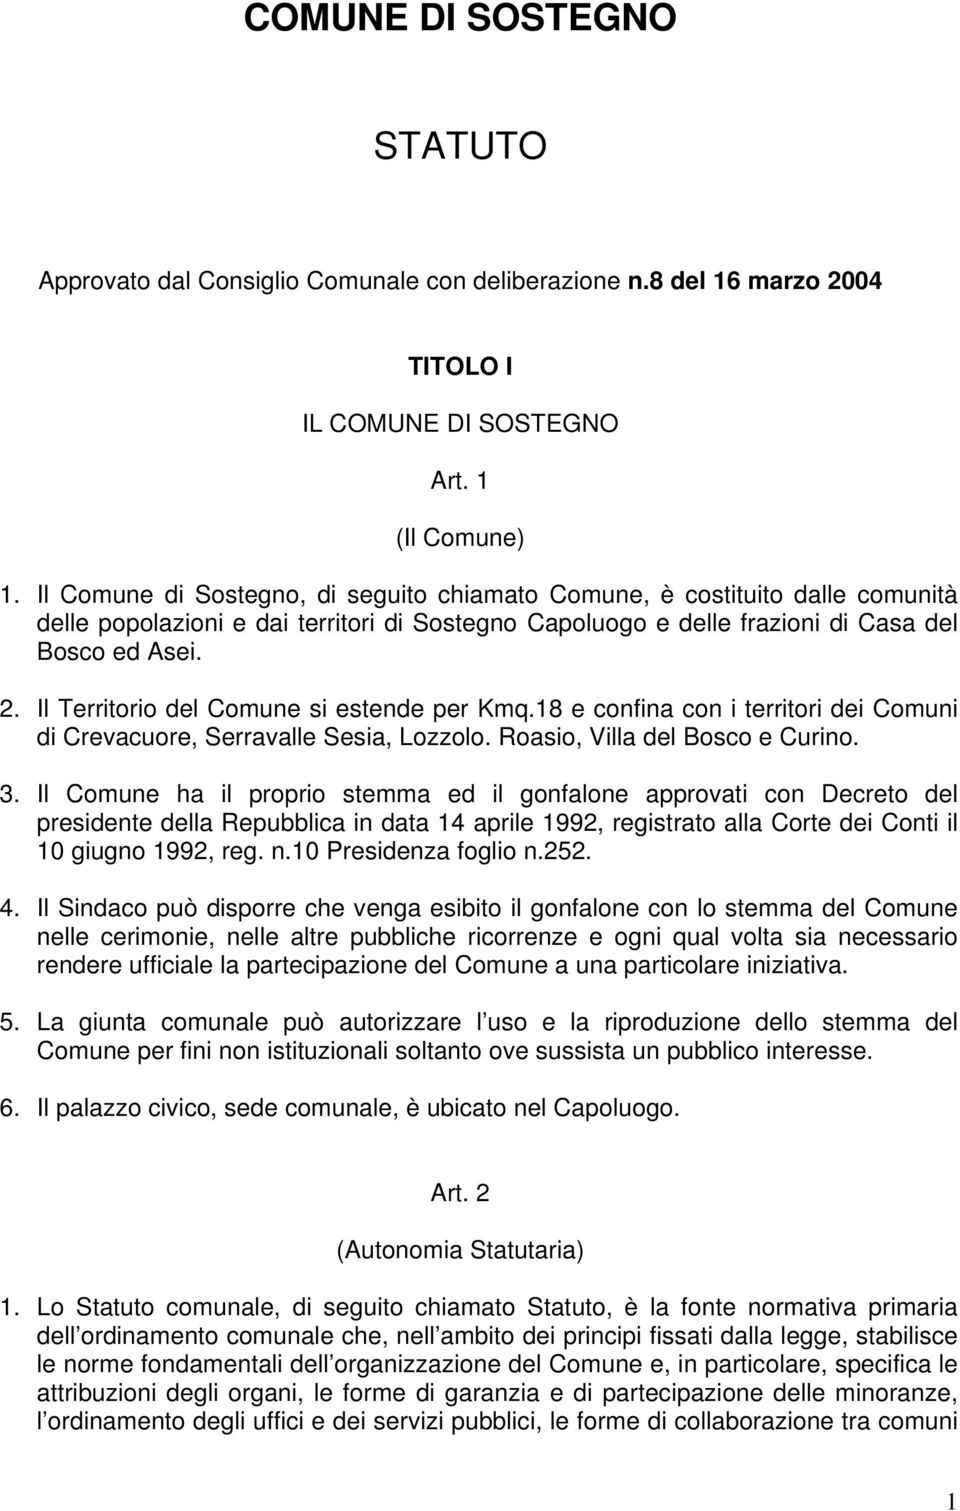 Il Territorio del Comune si estende per Kmq.18 e confina con i territori dei Comuni di Crevacuore, Serravalle Sesia, Lozzolo. Roasio, Villa del Bosco e Curino. 3.